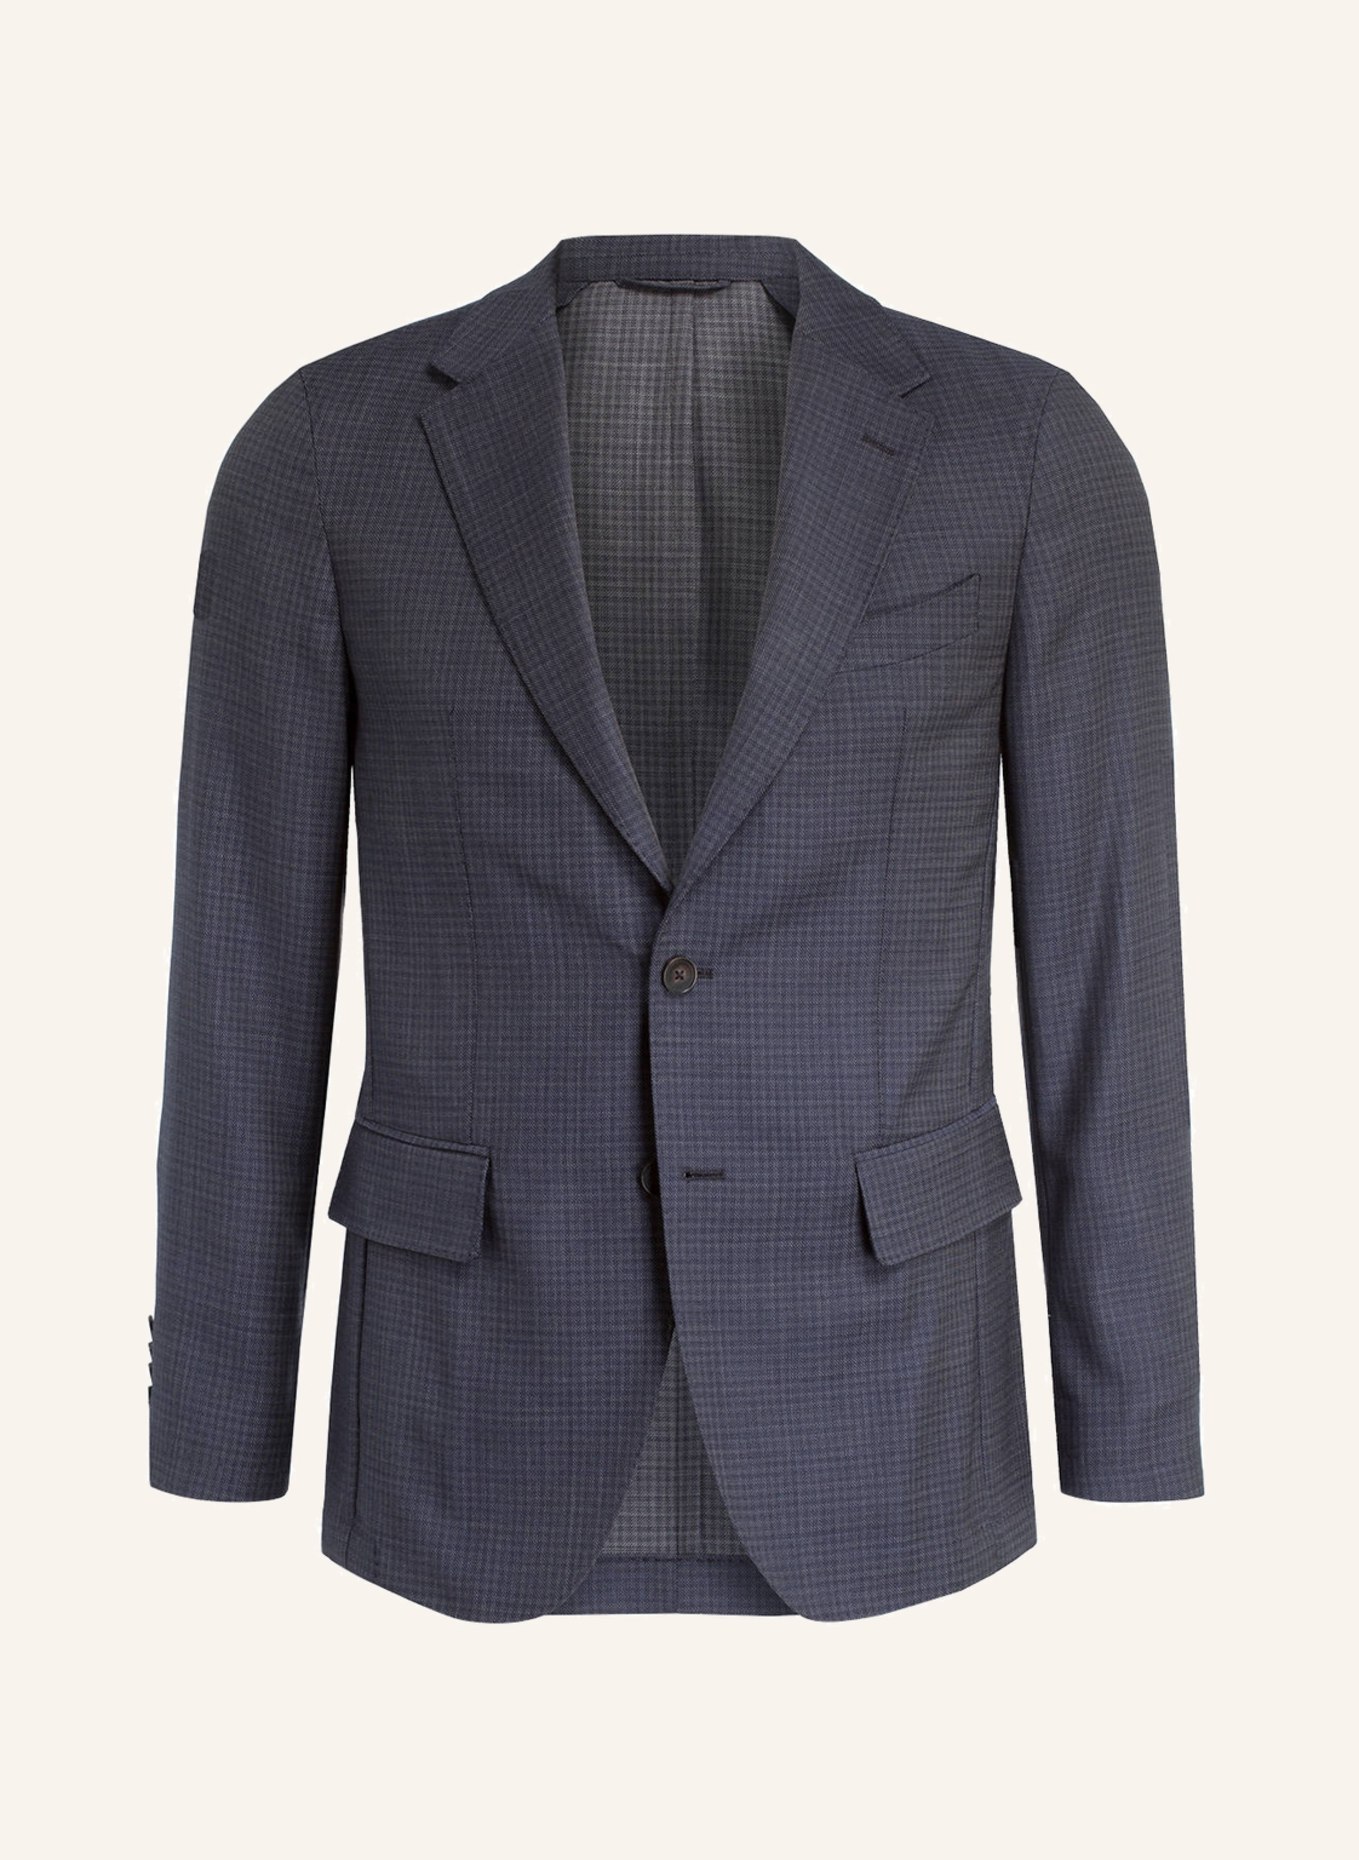 PAUL Suit jacket Slim Fit, Color: 105 navy (Image 1)